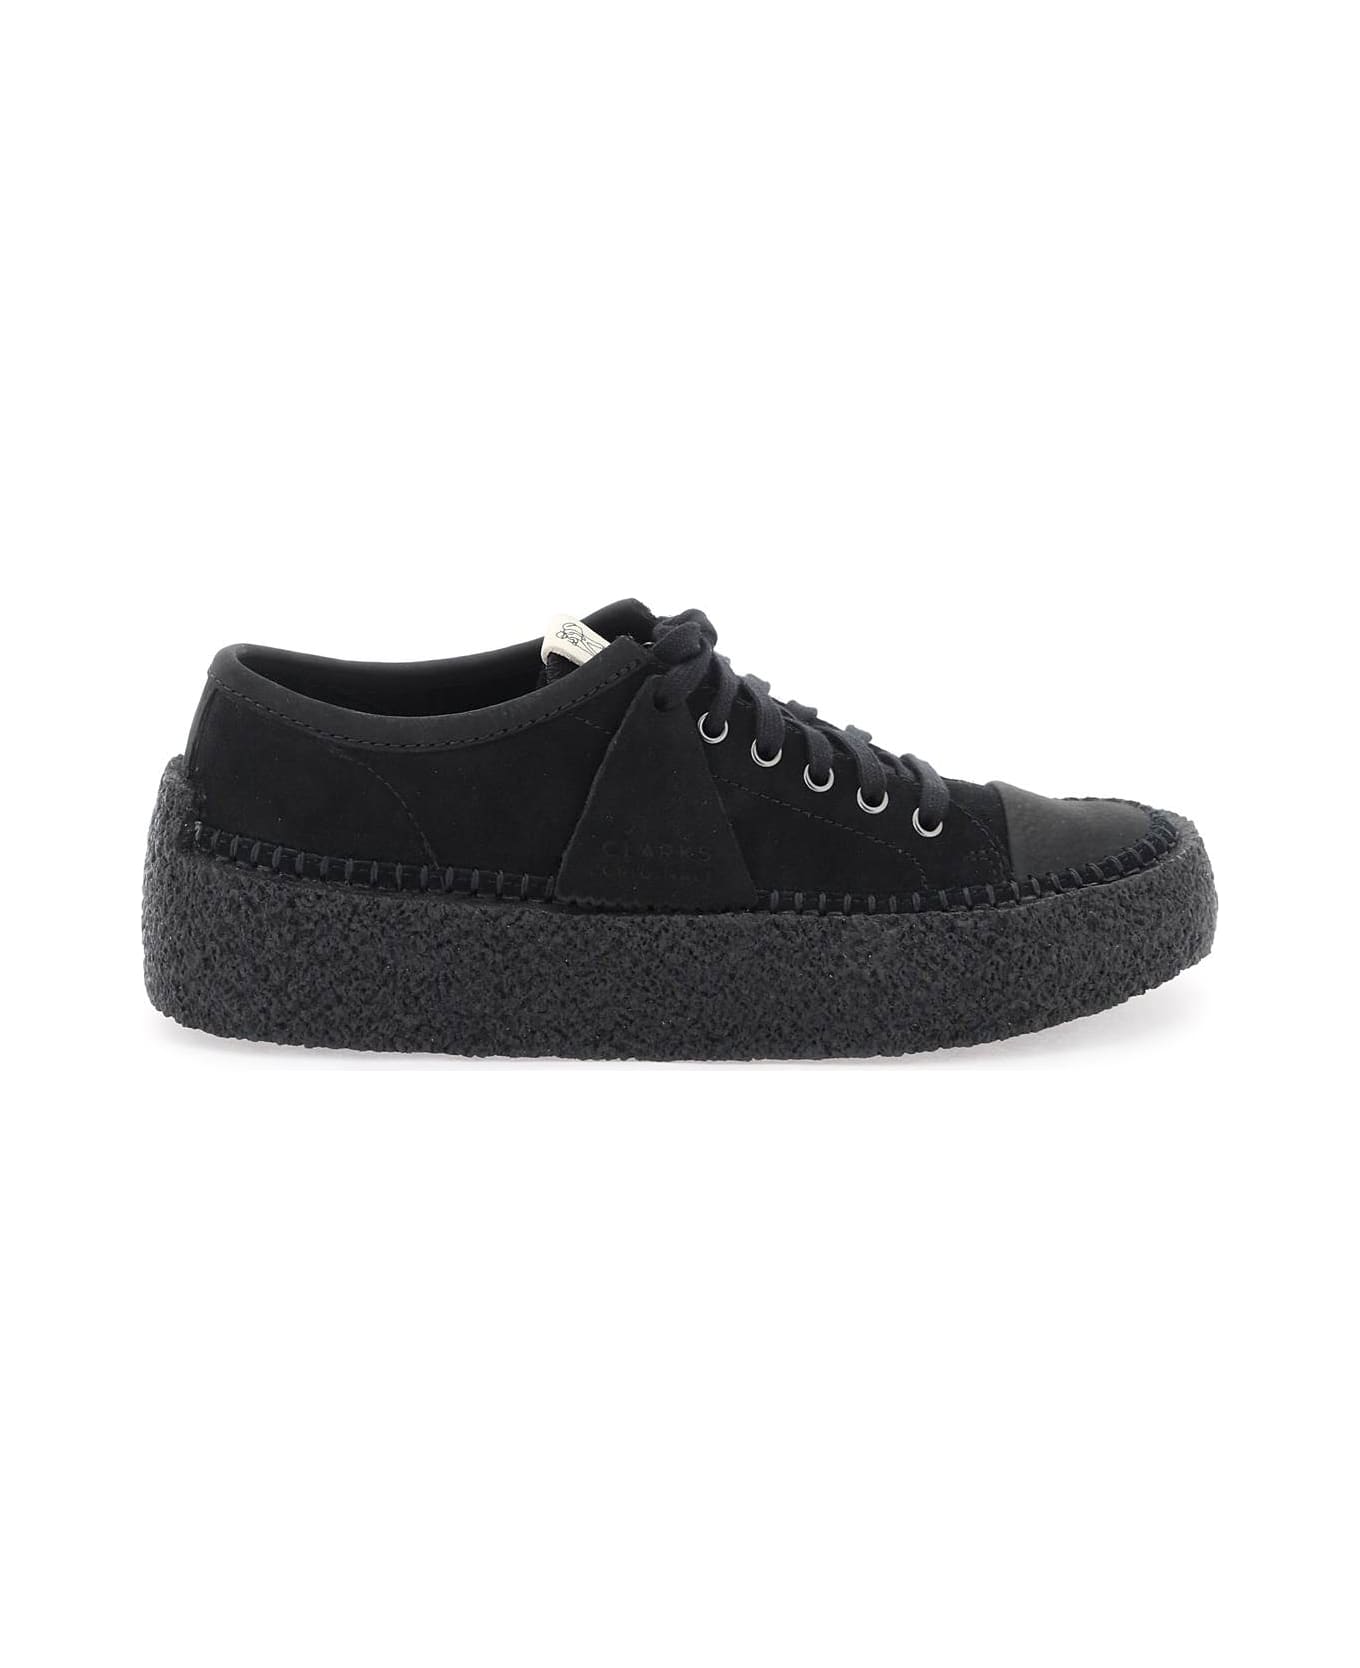 Clarks Suede Leather 'caravan' Sneakers - BLACK (Black) スニーカー